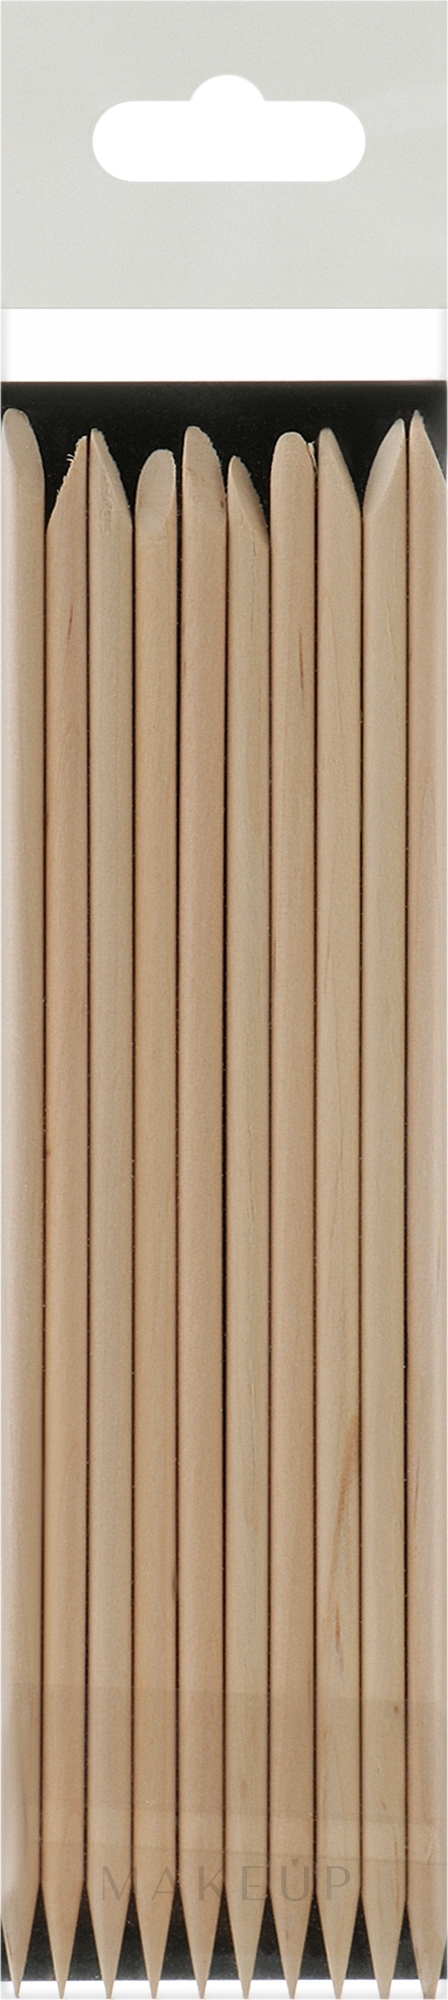 Maniküre-Stäbchen aus Orangenbaum-Holz - Staleks Pro Expert Wooden Orange Stick — Bild 10 St.